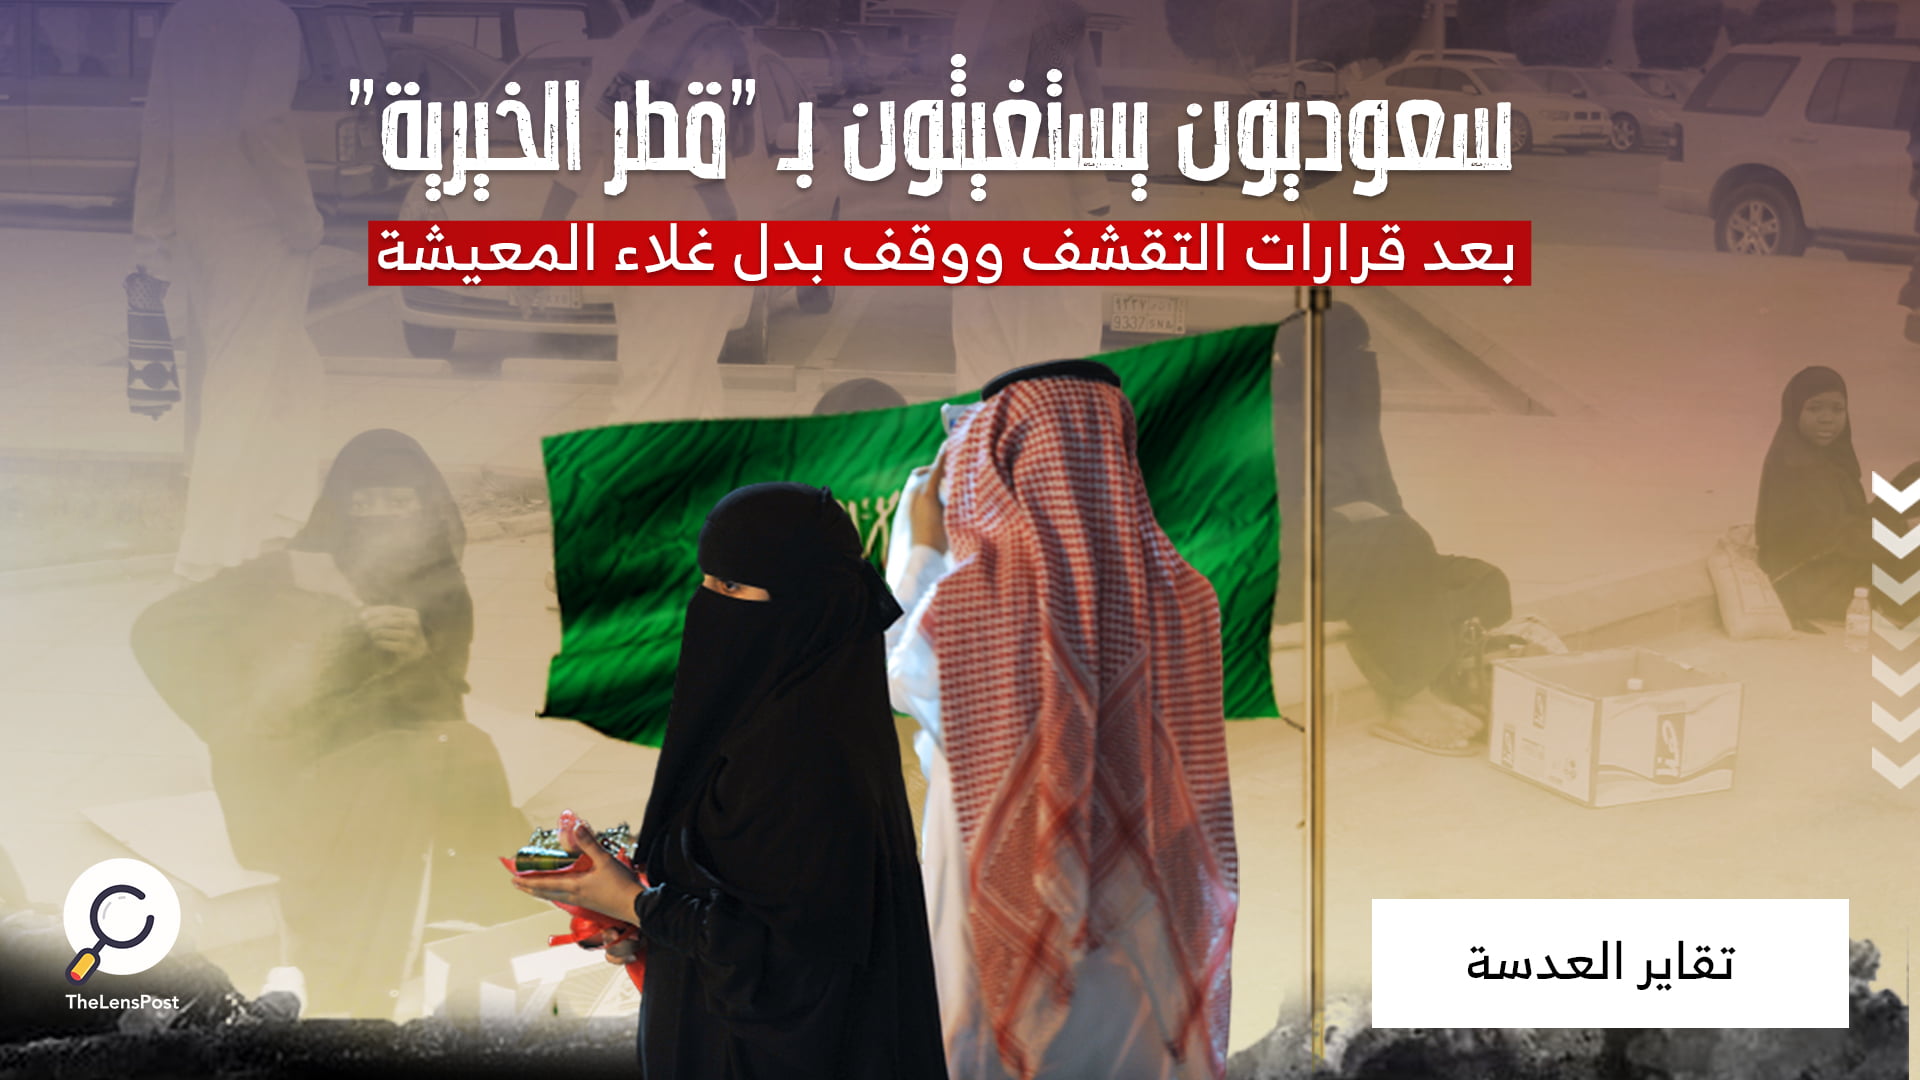 سعوديون يستغيثون بـ "قطر الخيرية" .. بعد قرارات التقشف ووقف بدل غلاء المعيشة